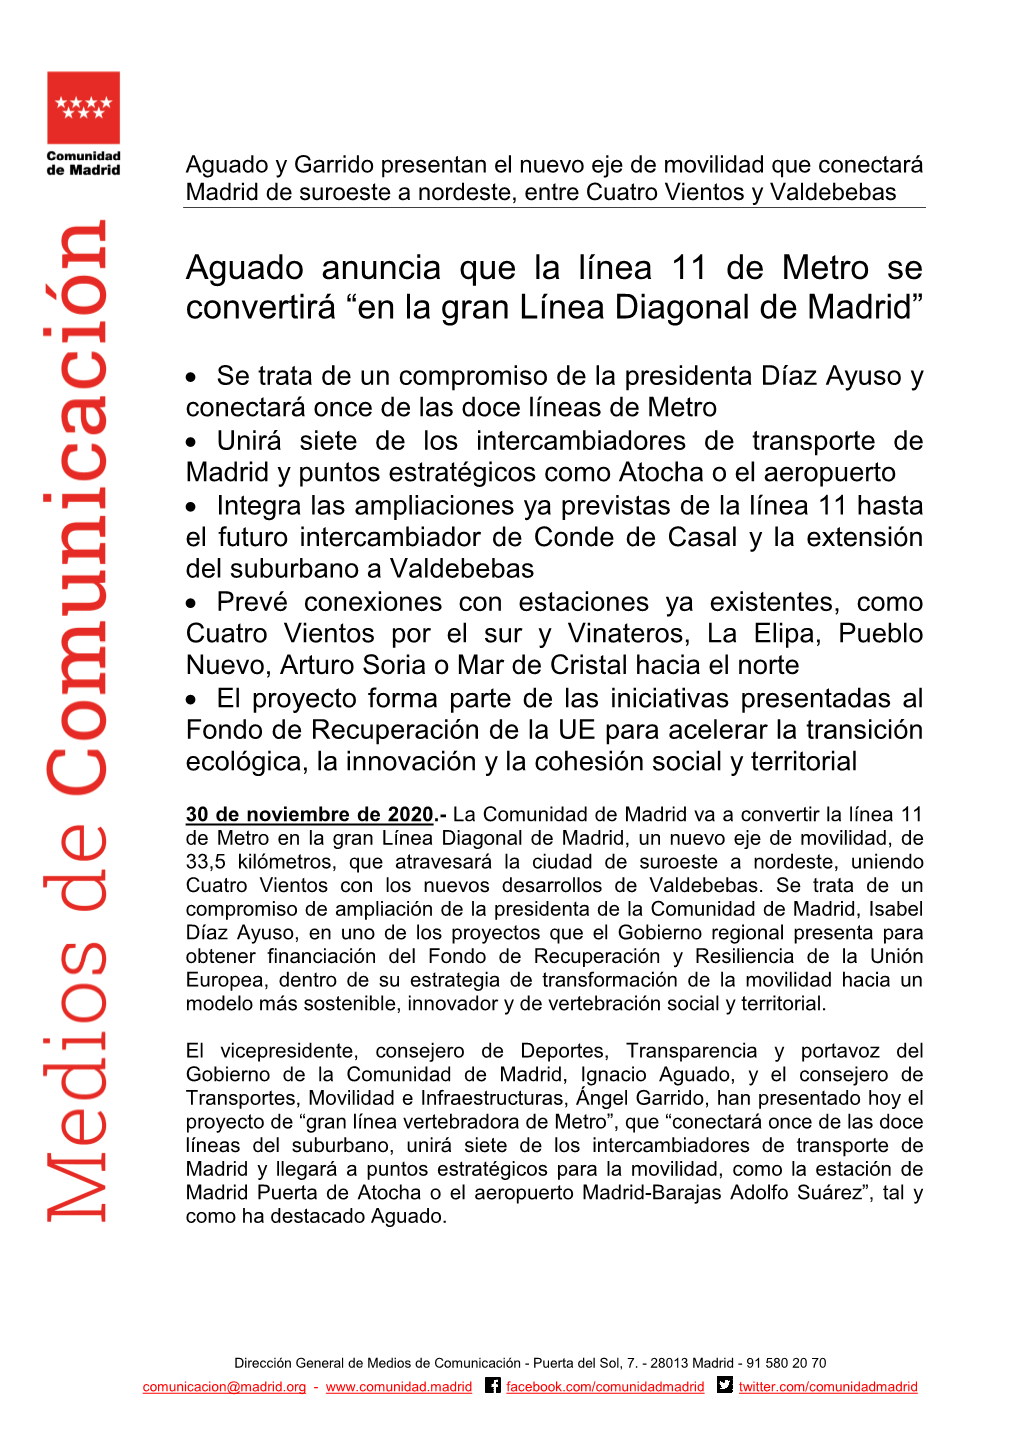 Aguado Anuncia Que La Línea 11 De Metro Se Convertirá “En La Gran Línea Diagonal De Madrid”